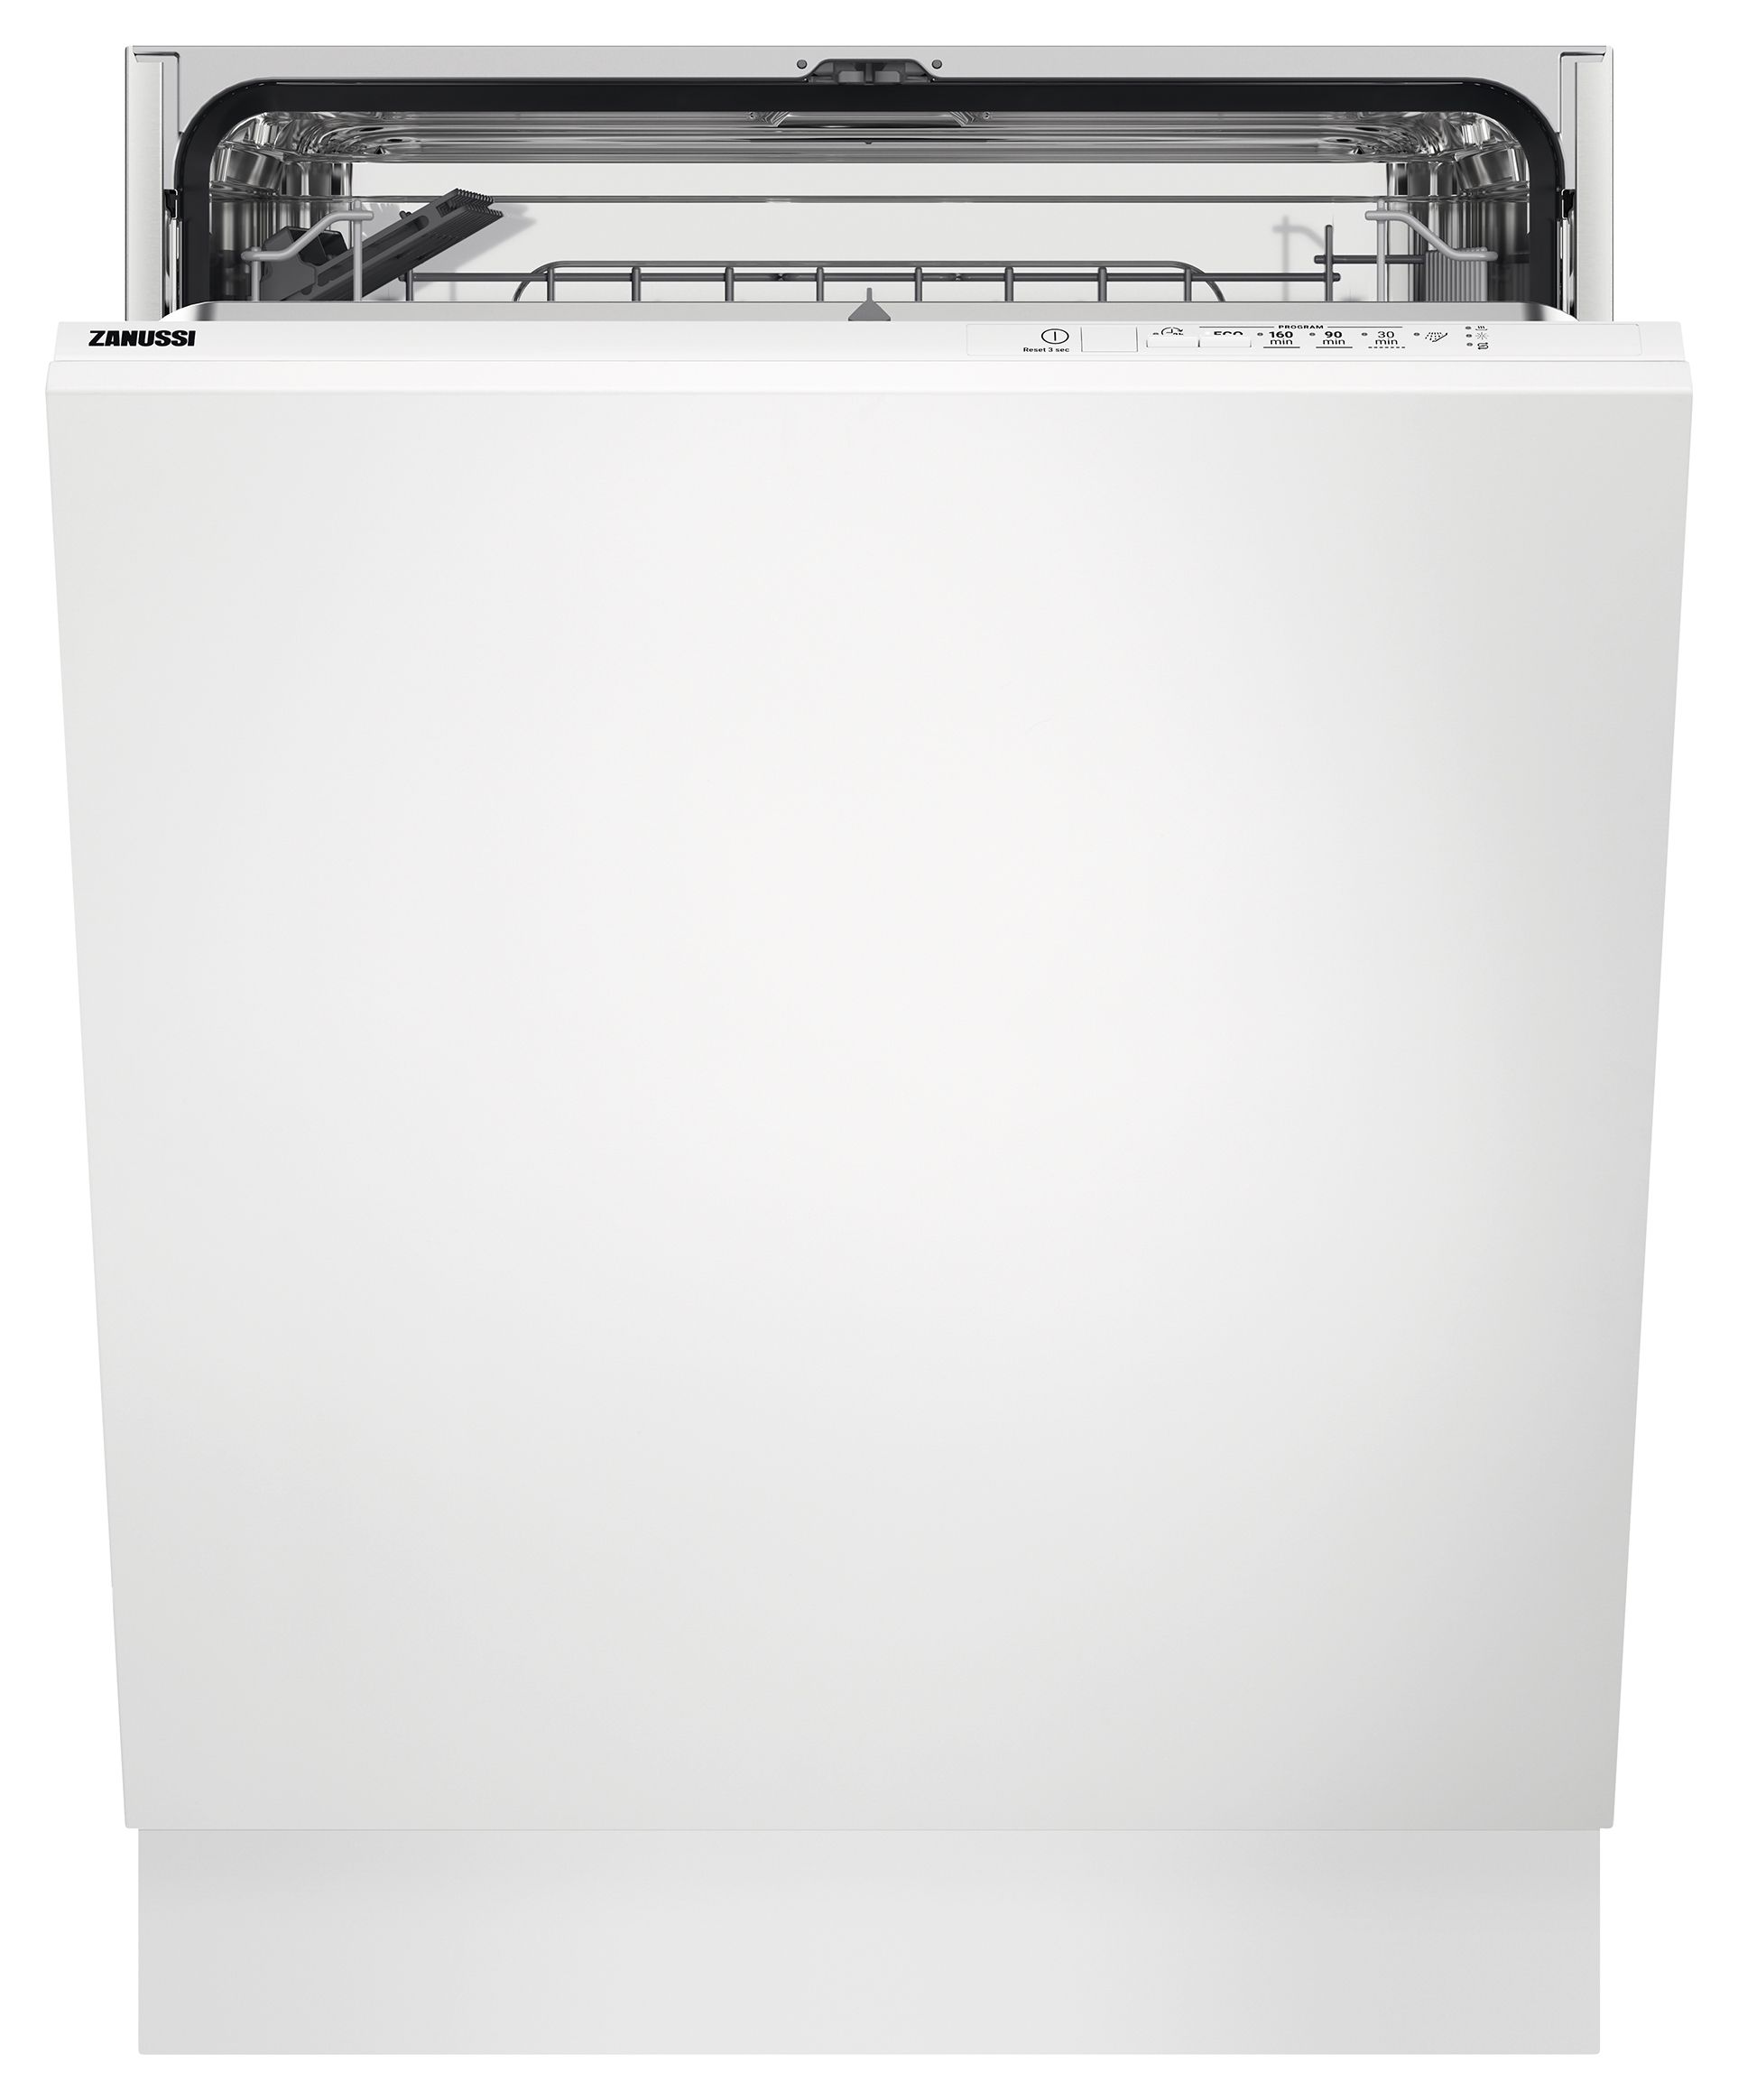 Image of Zanussi 60cm AirDry Dishwasher ZDLN1511 - White